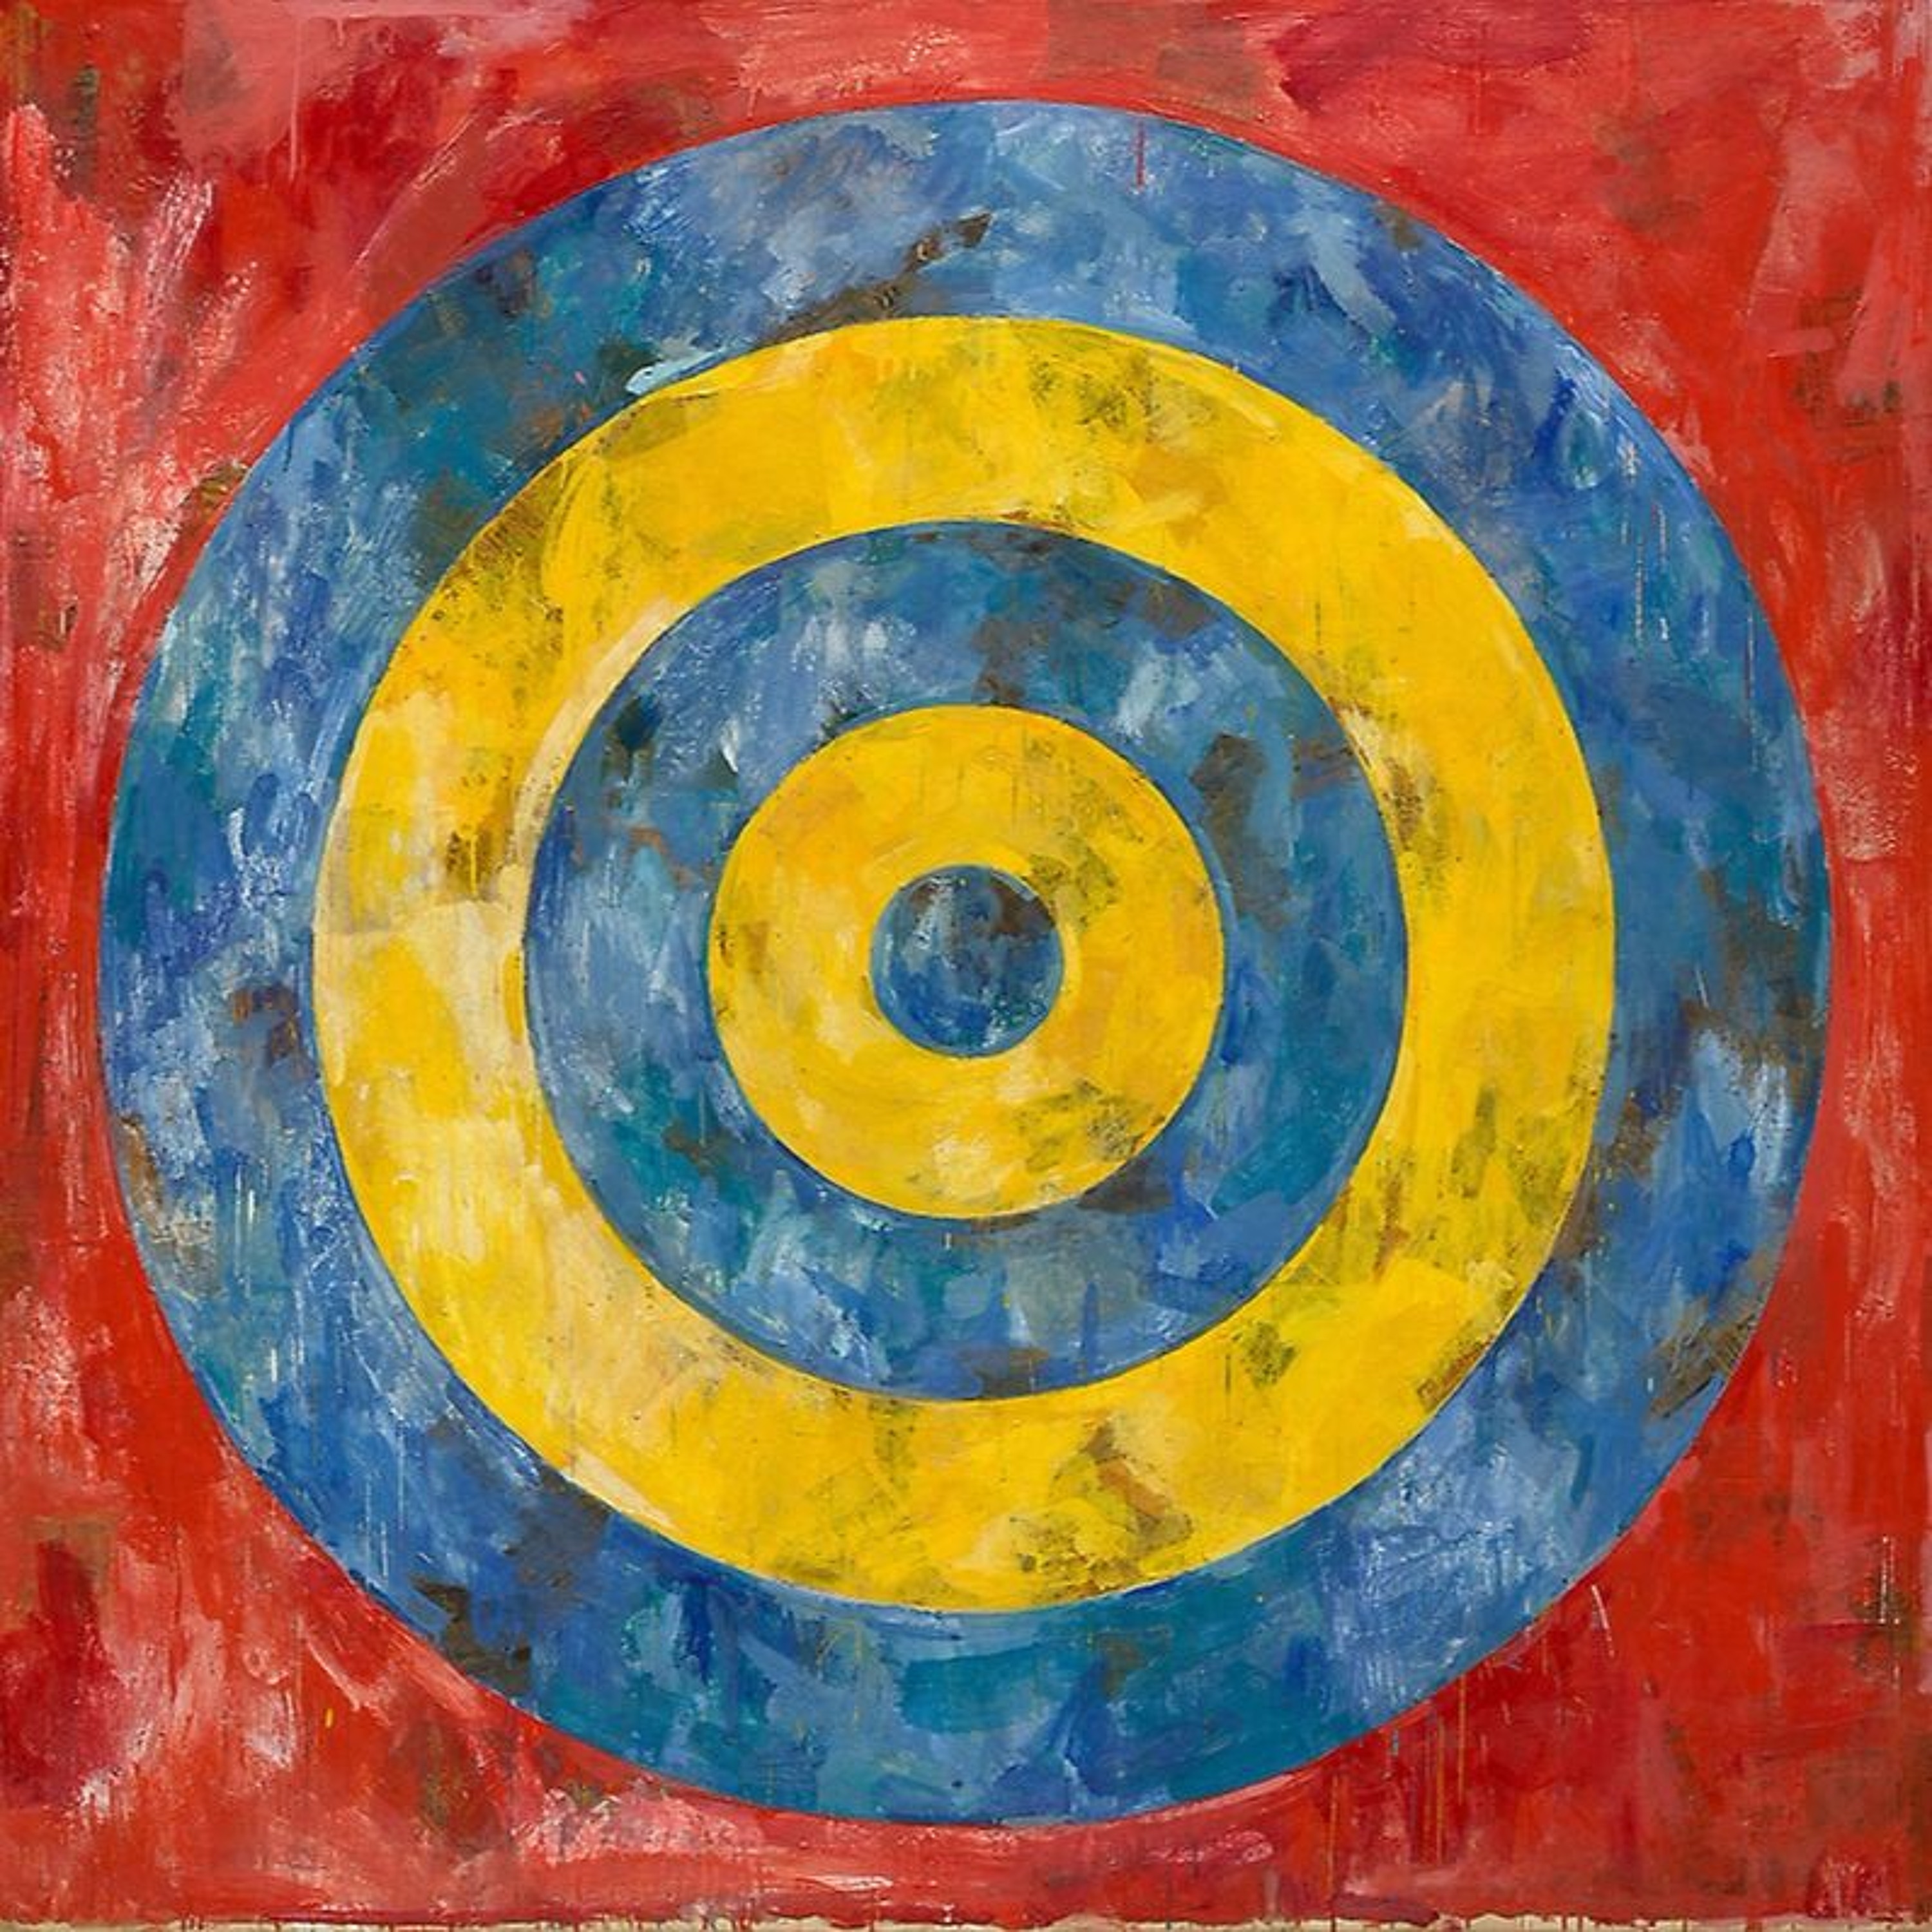 Ep. 22 - Jasper Johns' "Target" (1961)